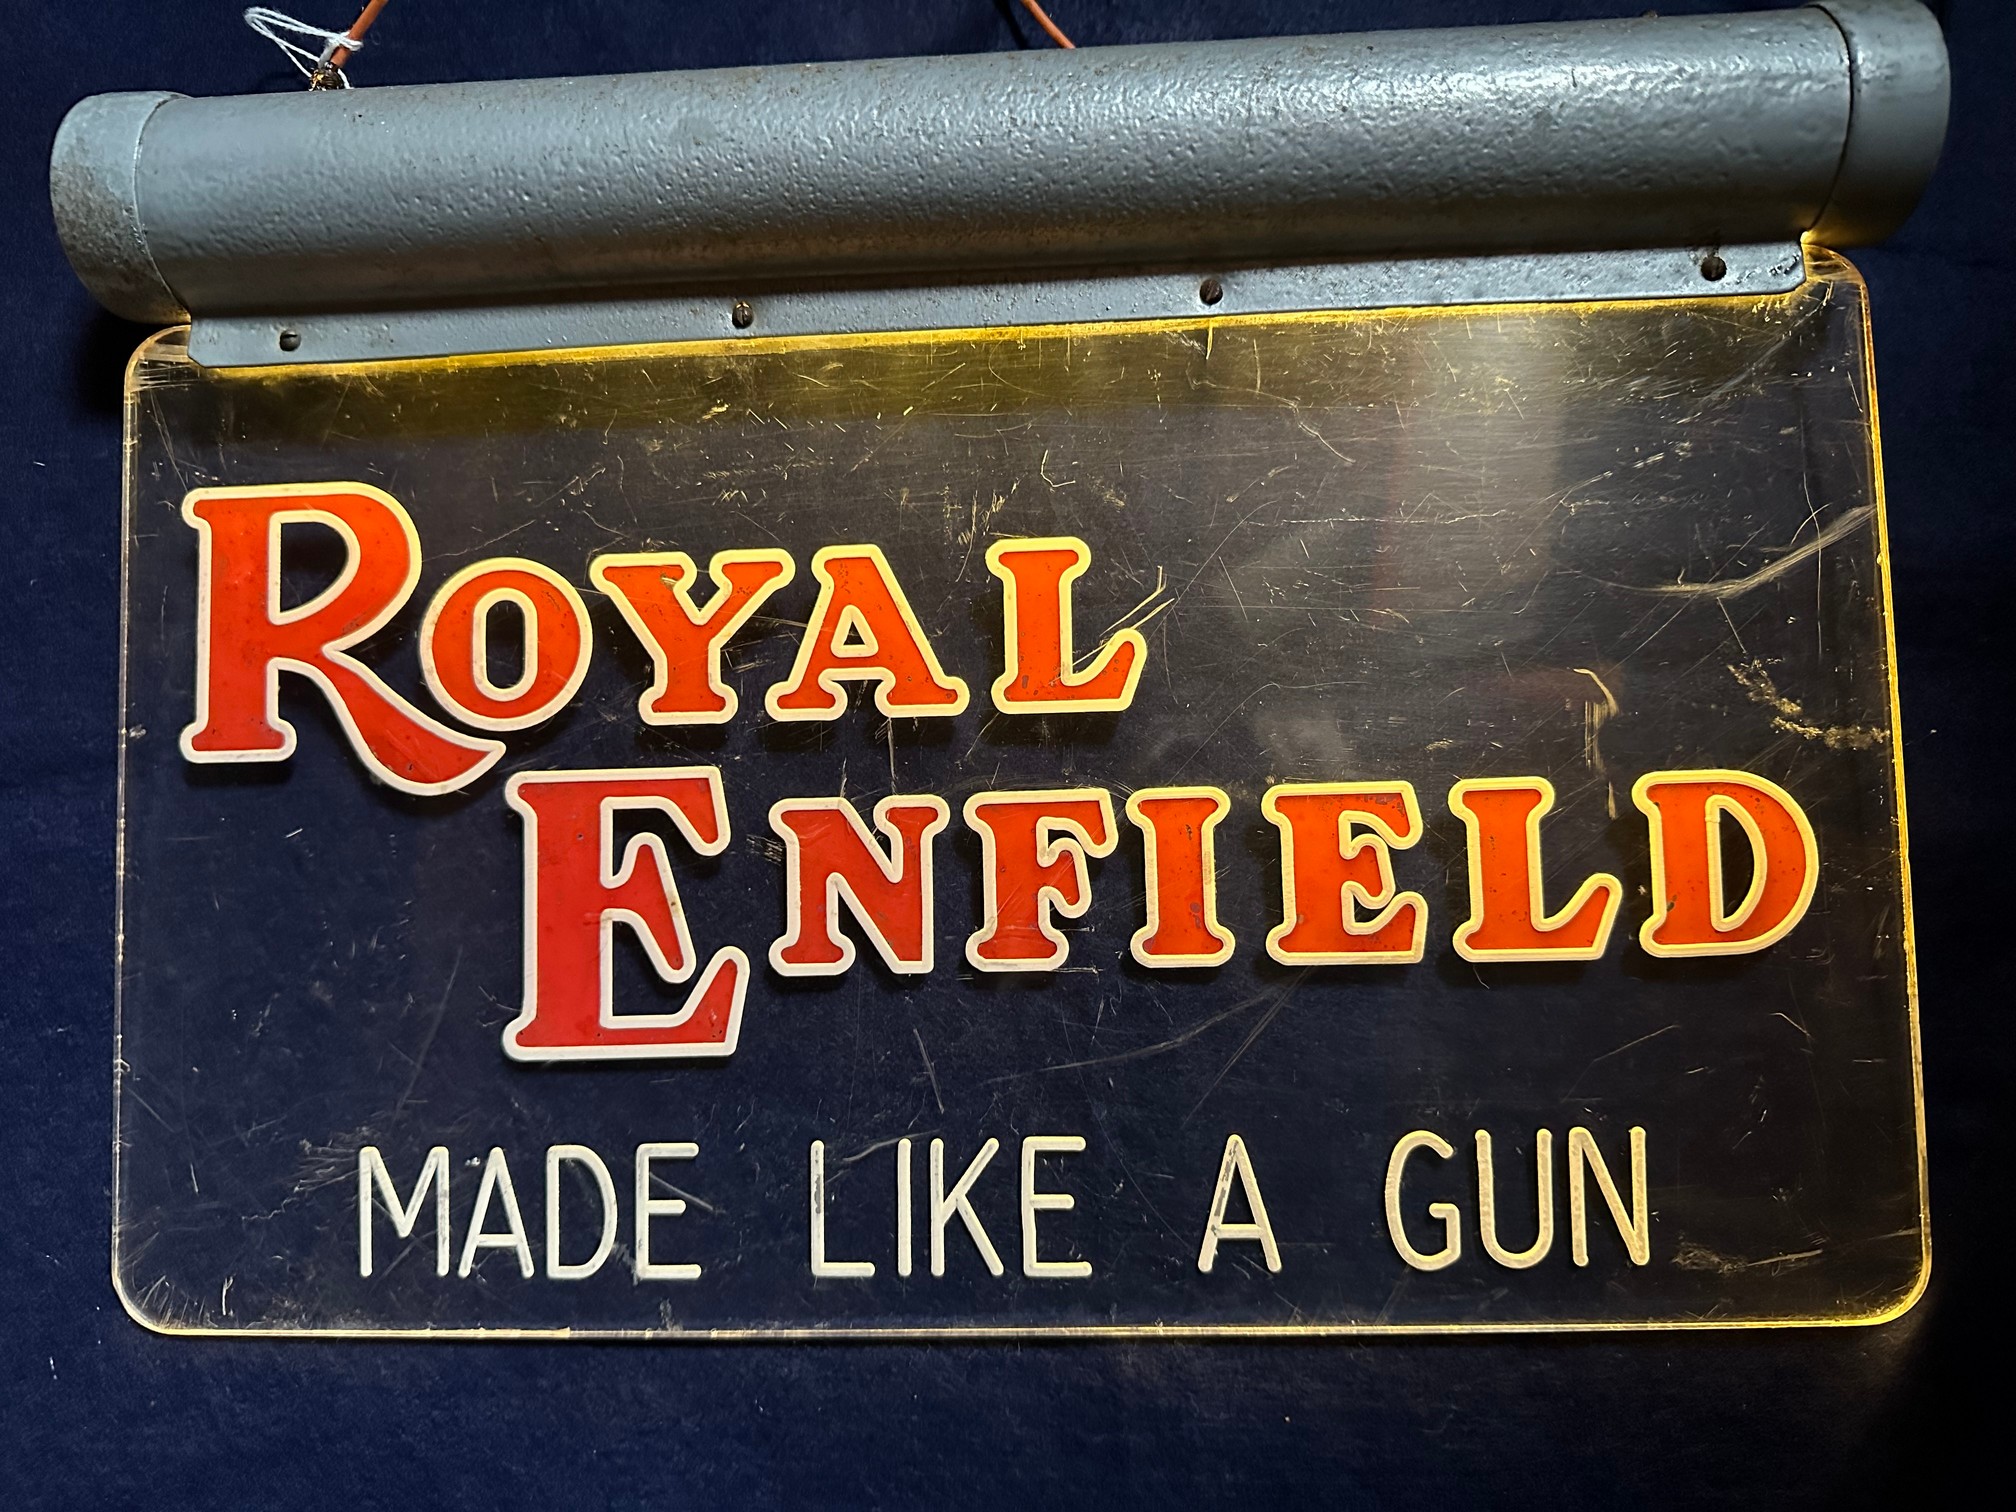 A Royal Enfield 'Made like a gun' light up sign, 15 1/2 x 11".